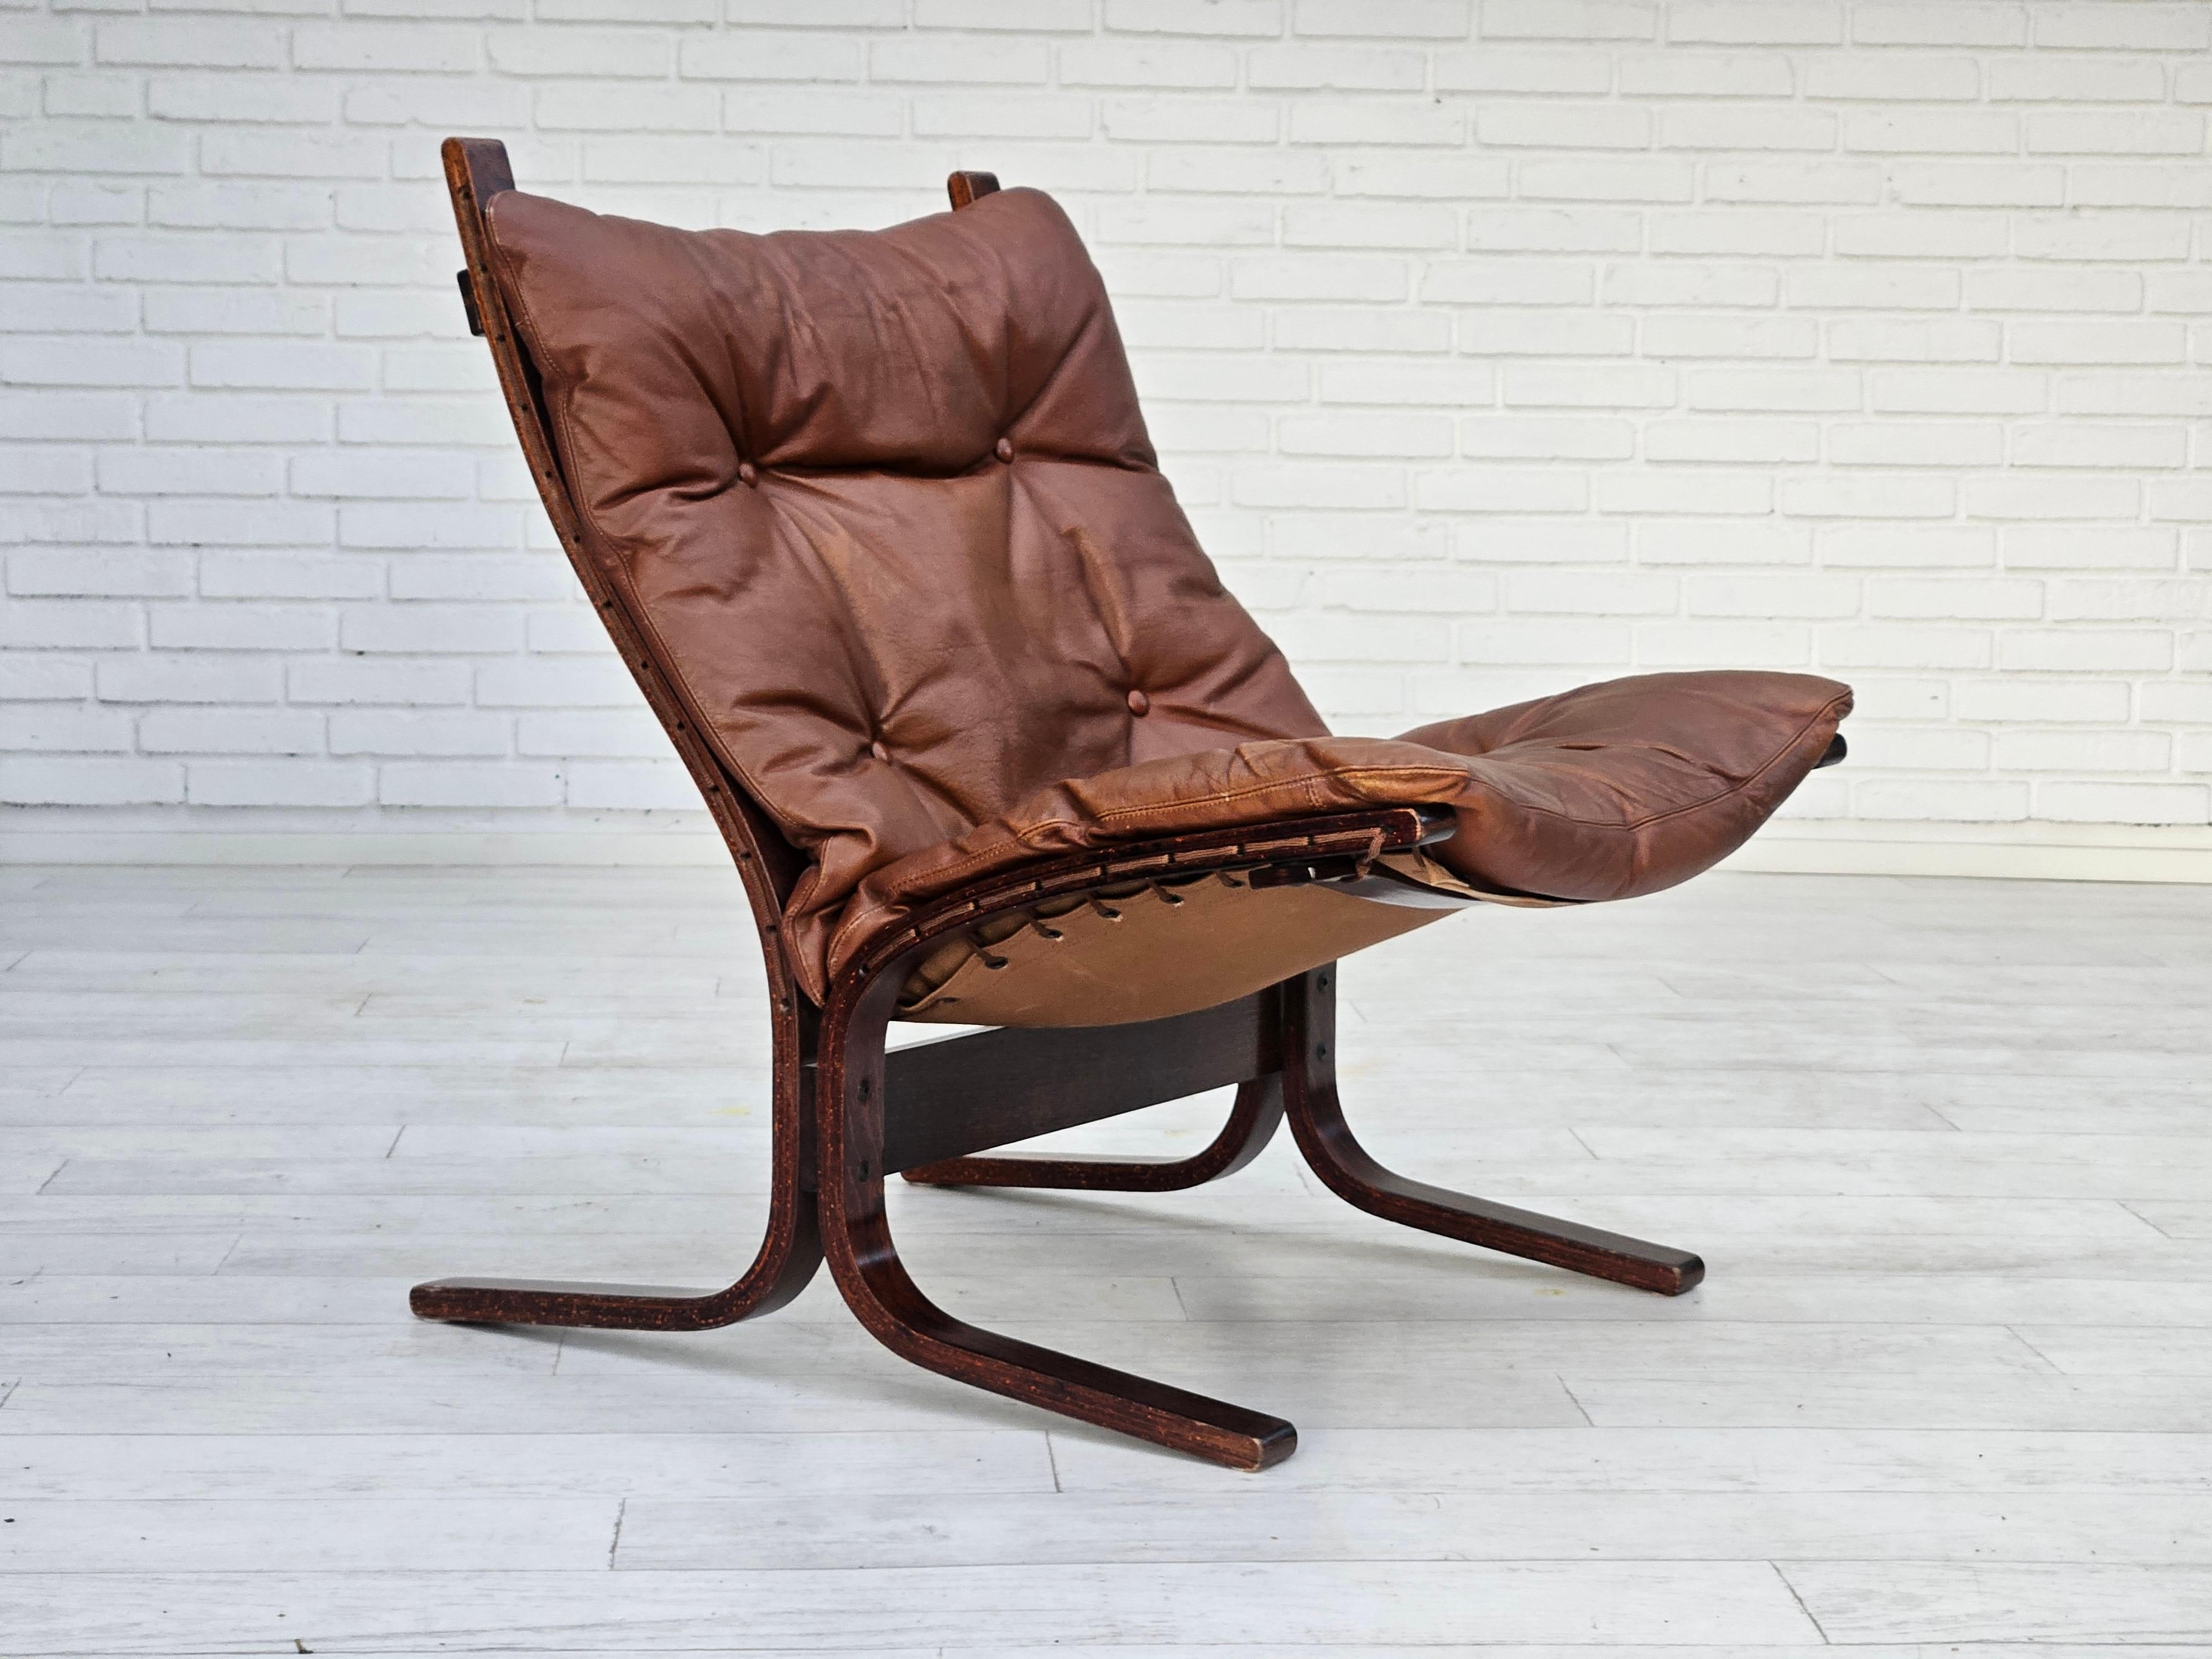 Années 1970, design norvégien d'Ingmar Relling, modèle Siesta, paire de deux chaises, o 1